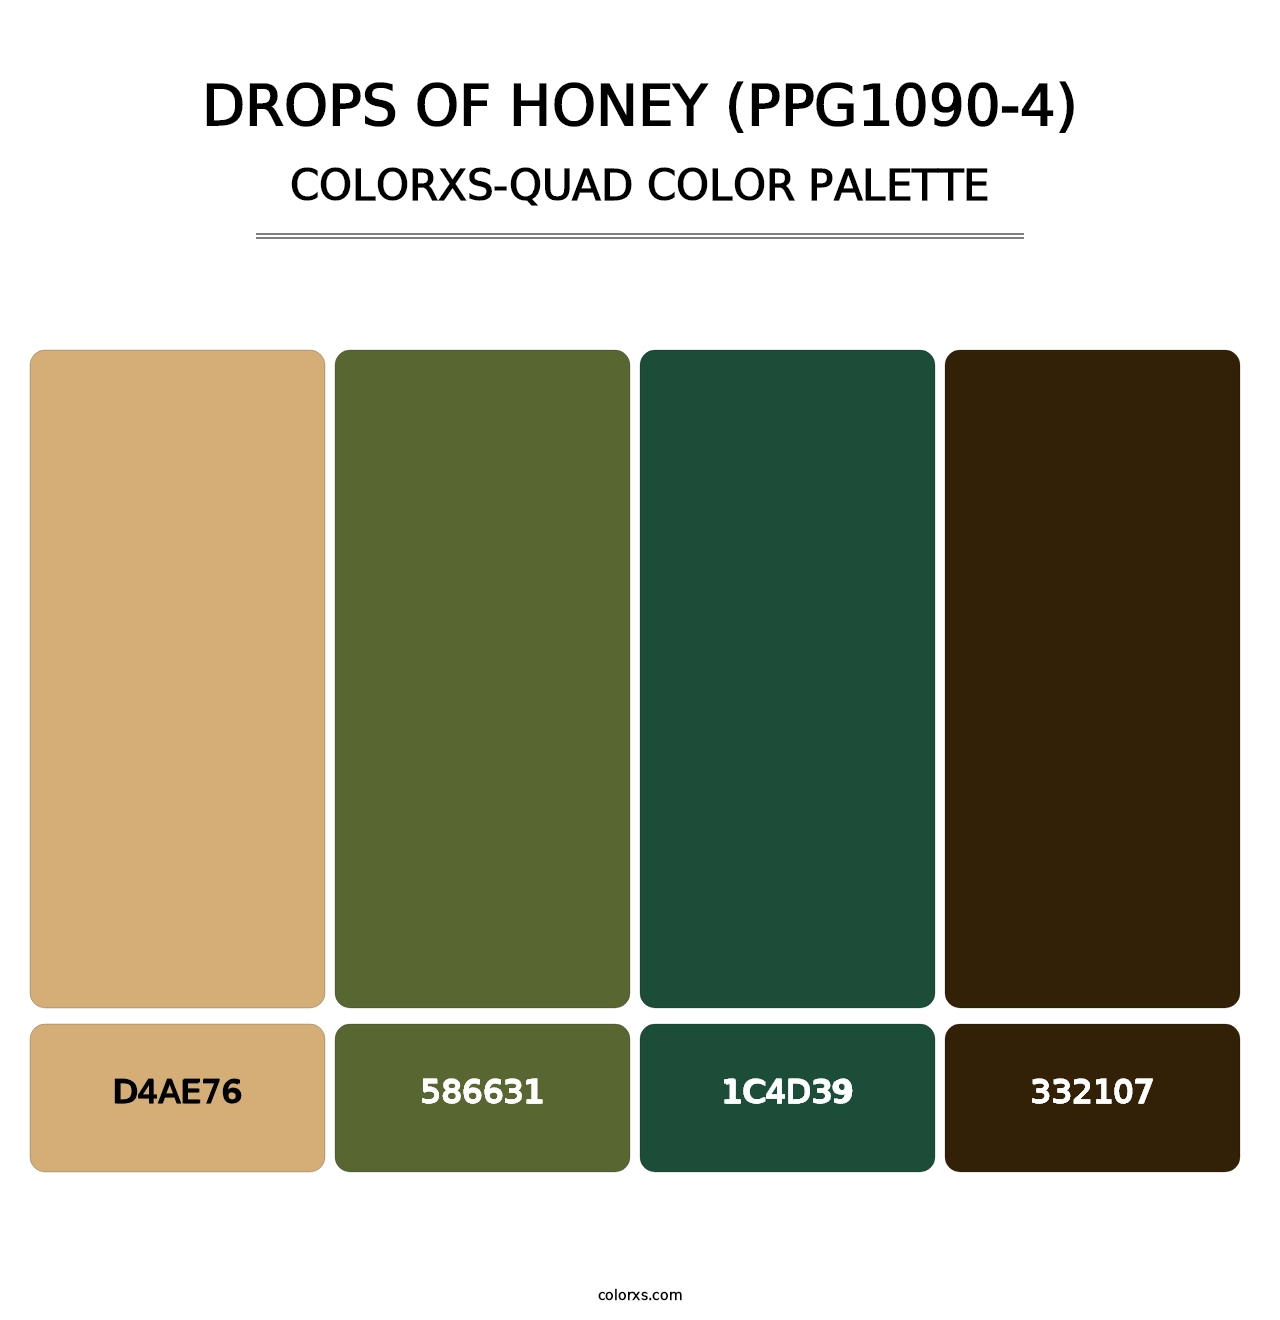 Drops Of Honey (PPG1090-4) - Colorxs Quad Palette